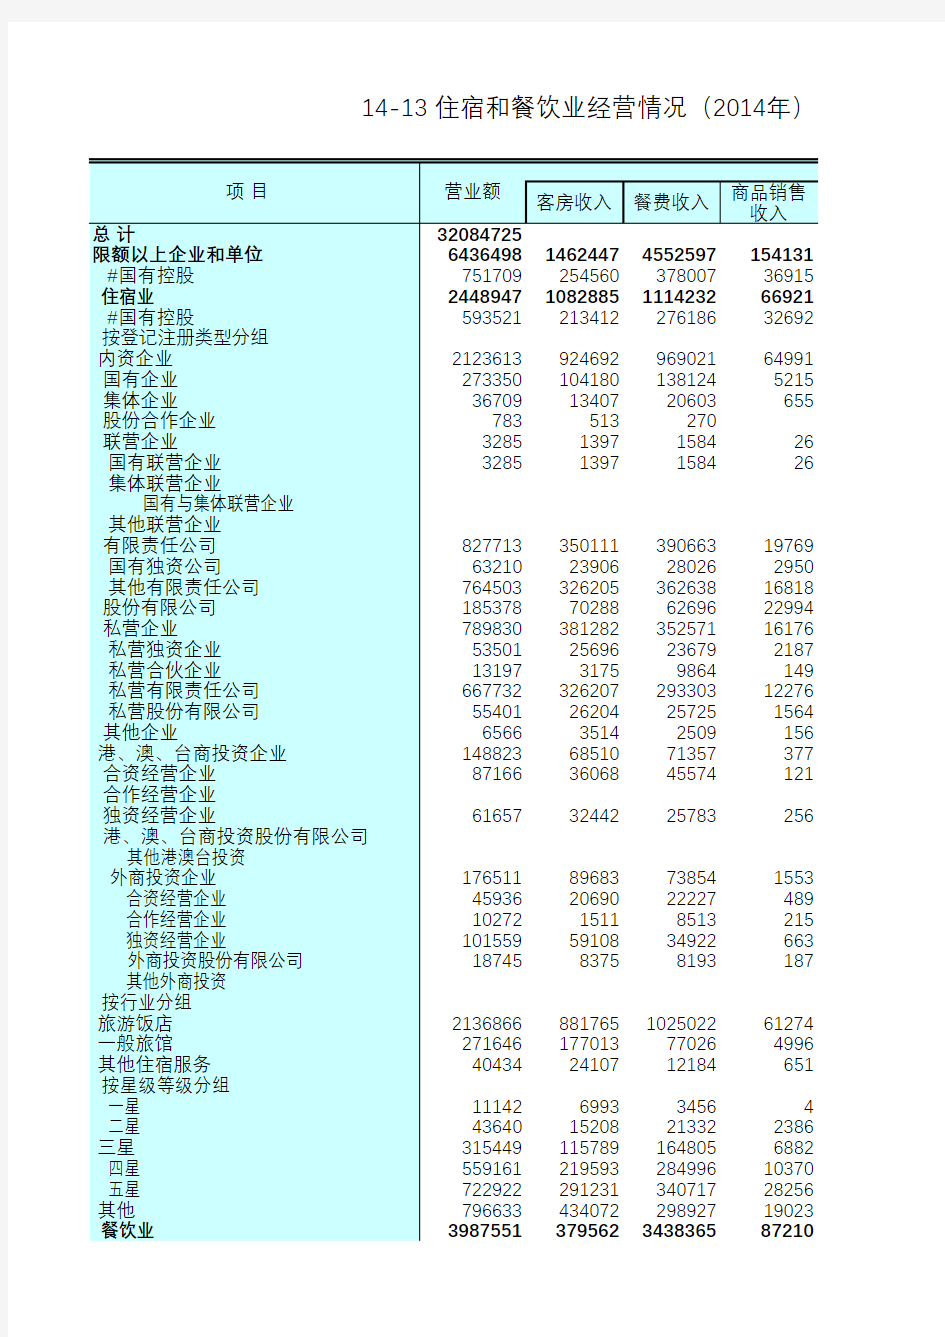 江苏统计年鉴2015社会经济发展指标：住宿和餐饮业经营情况(2014年)